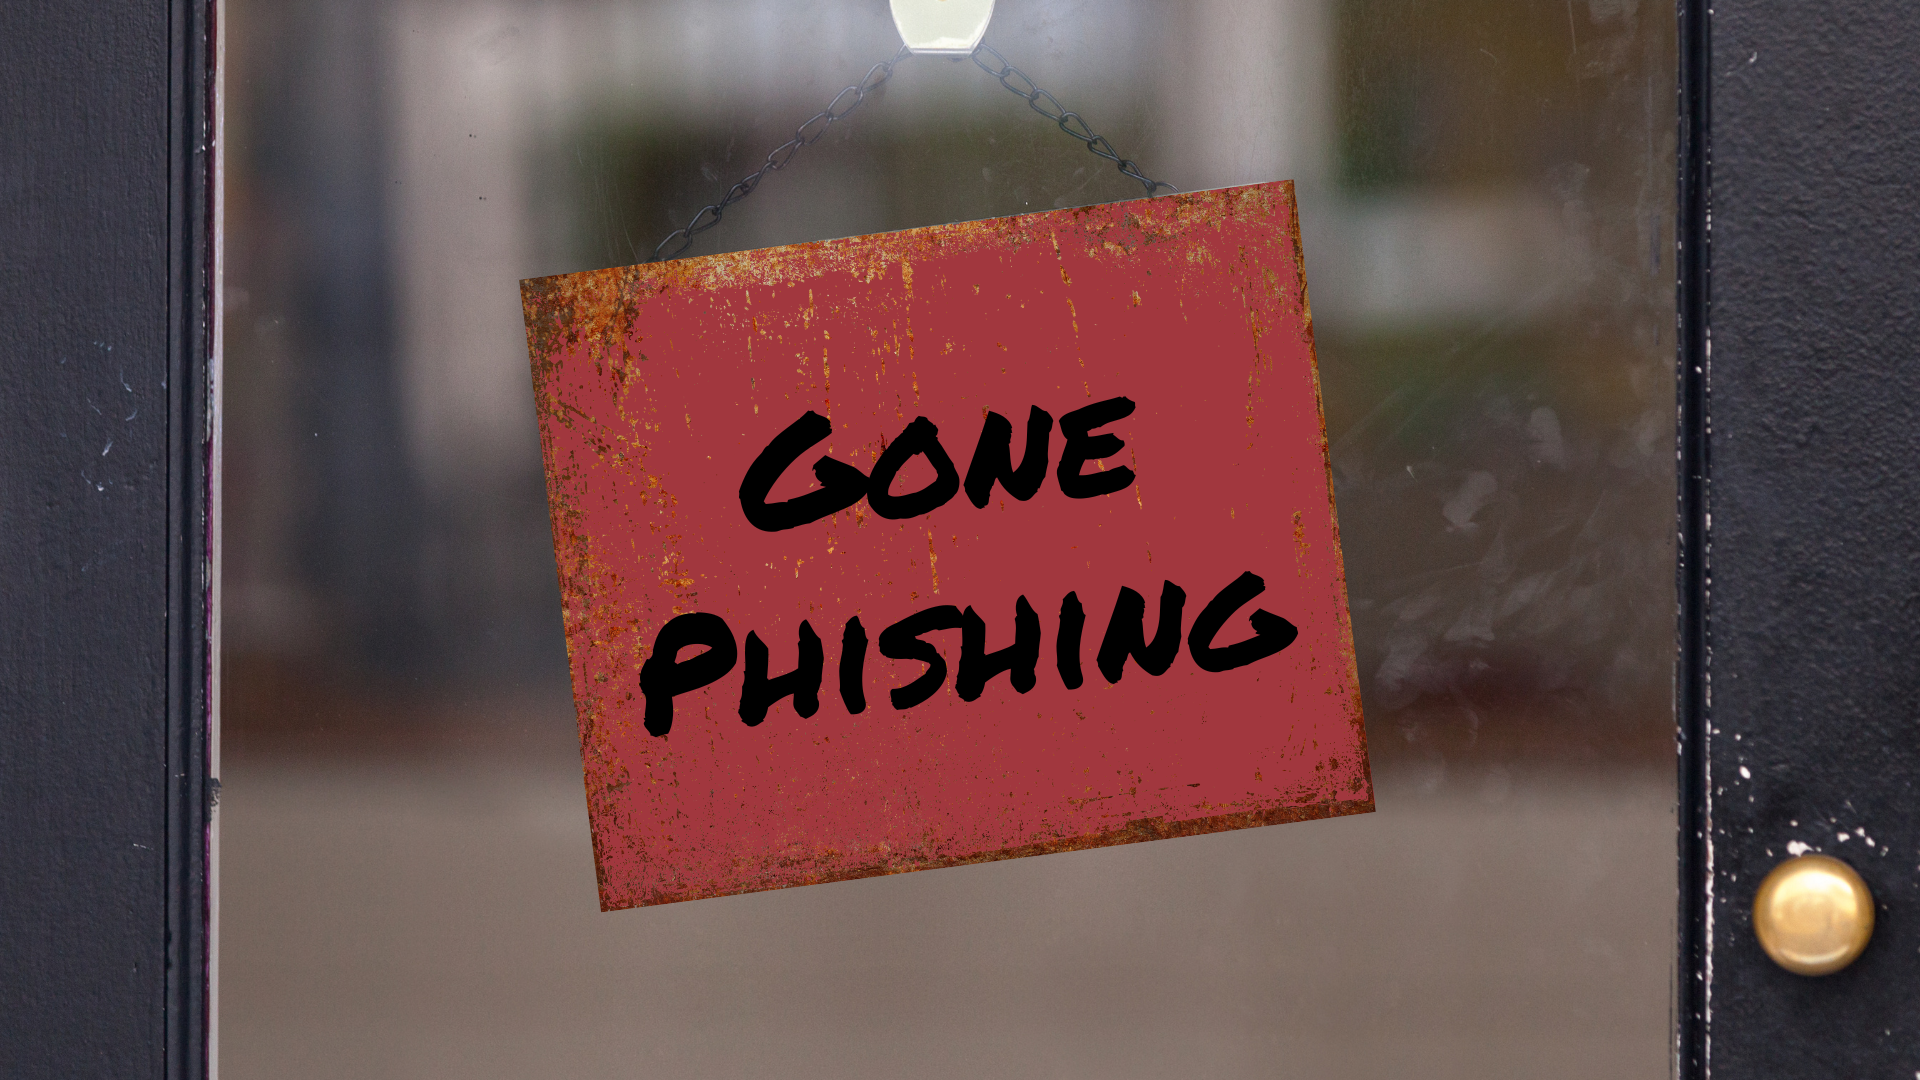 Gone phishing sign